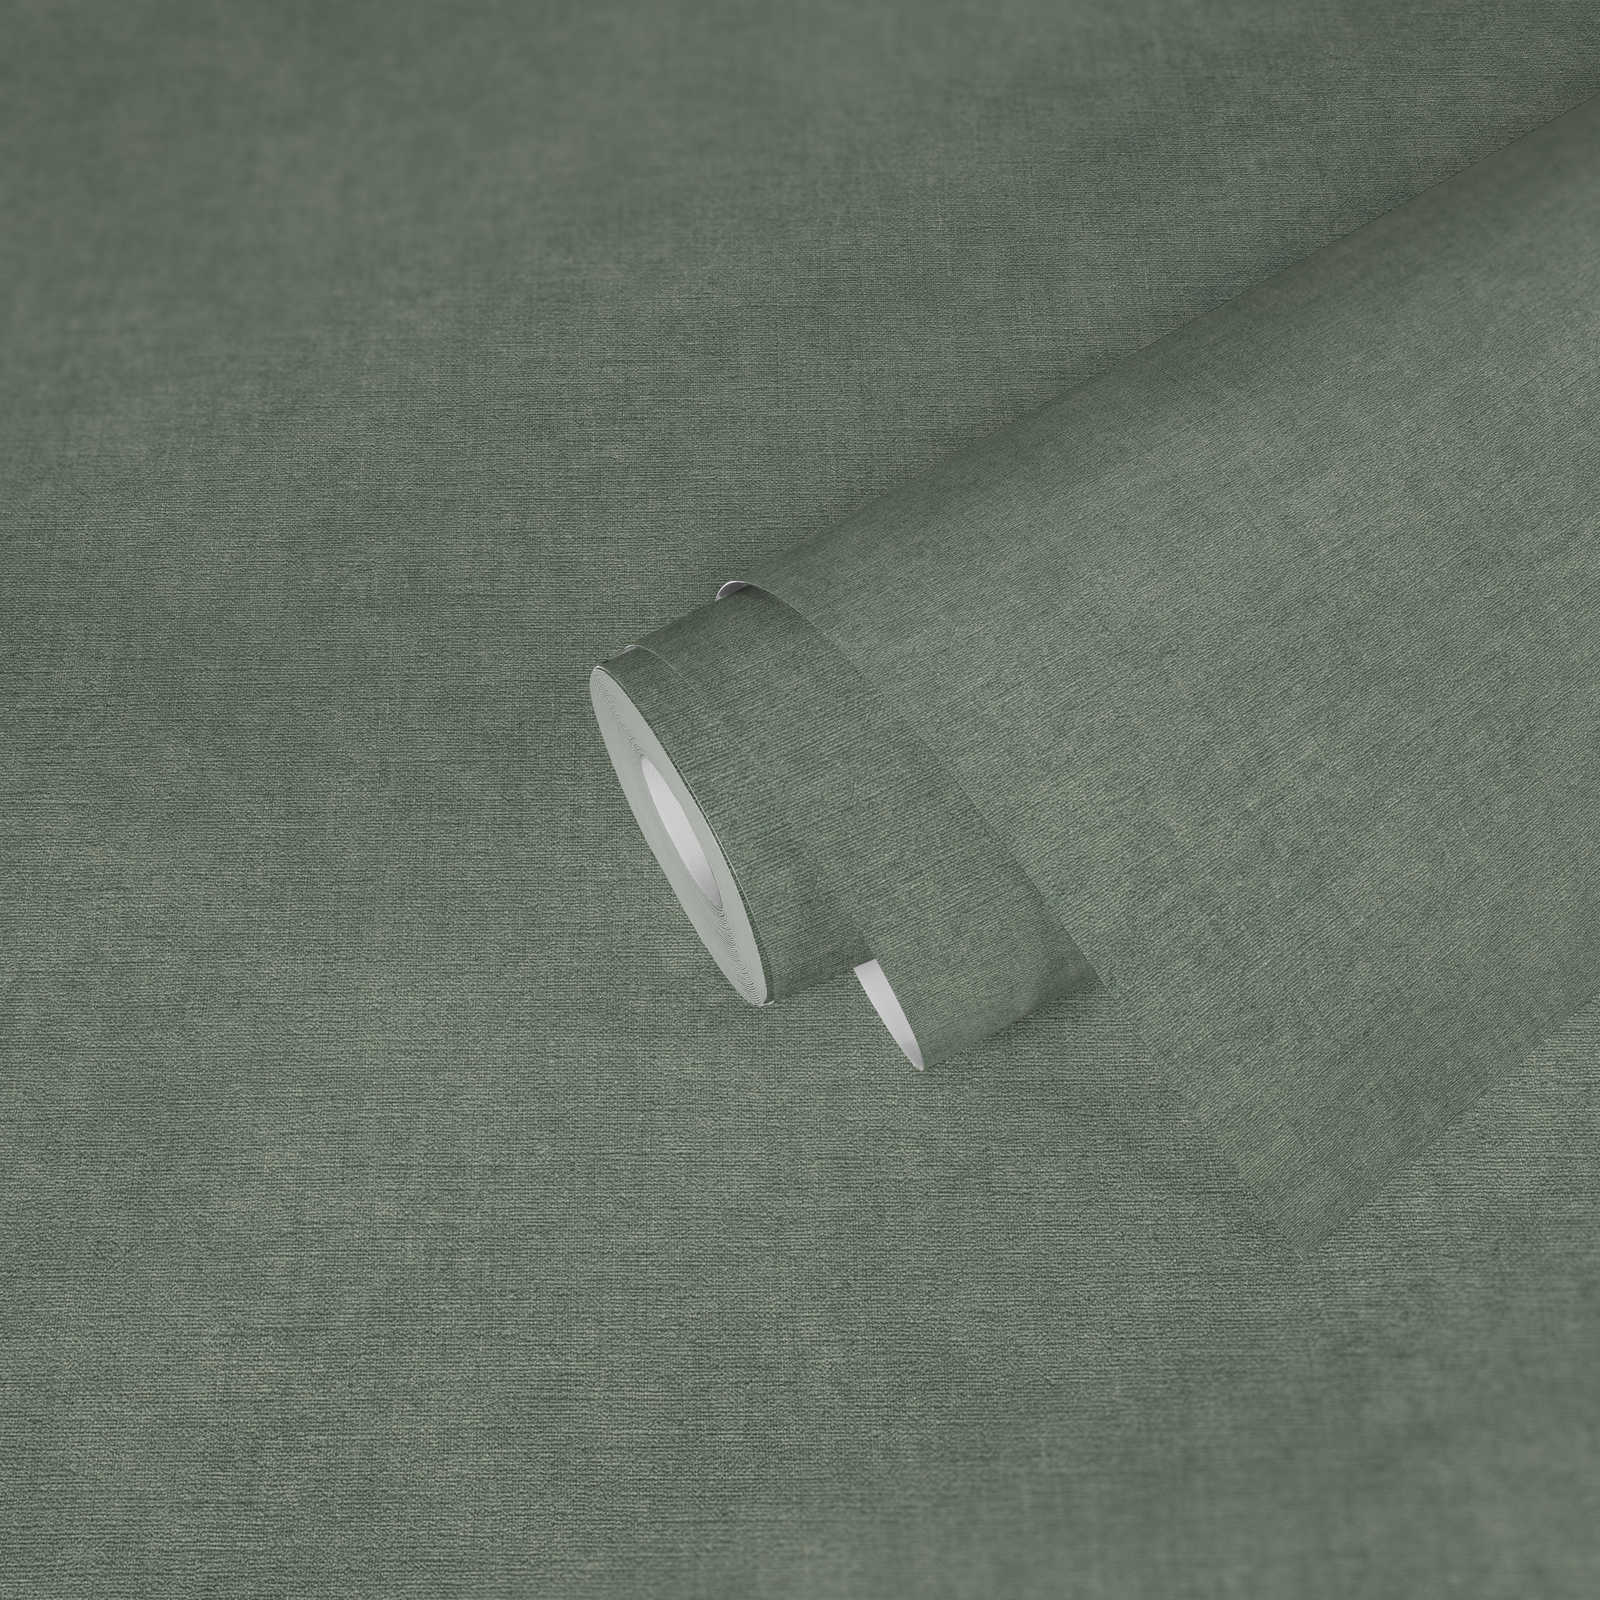             Carta da parati a tessitura leggera in look tessile - verde, grigio
        